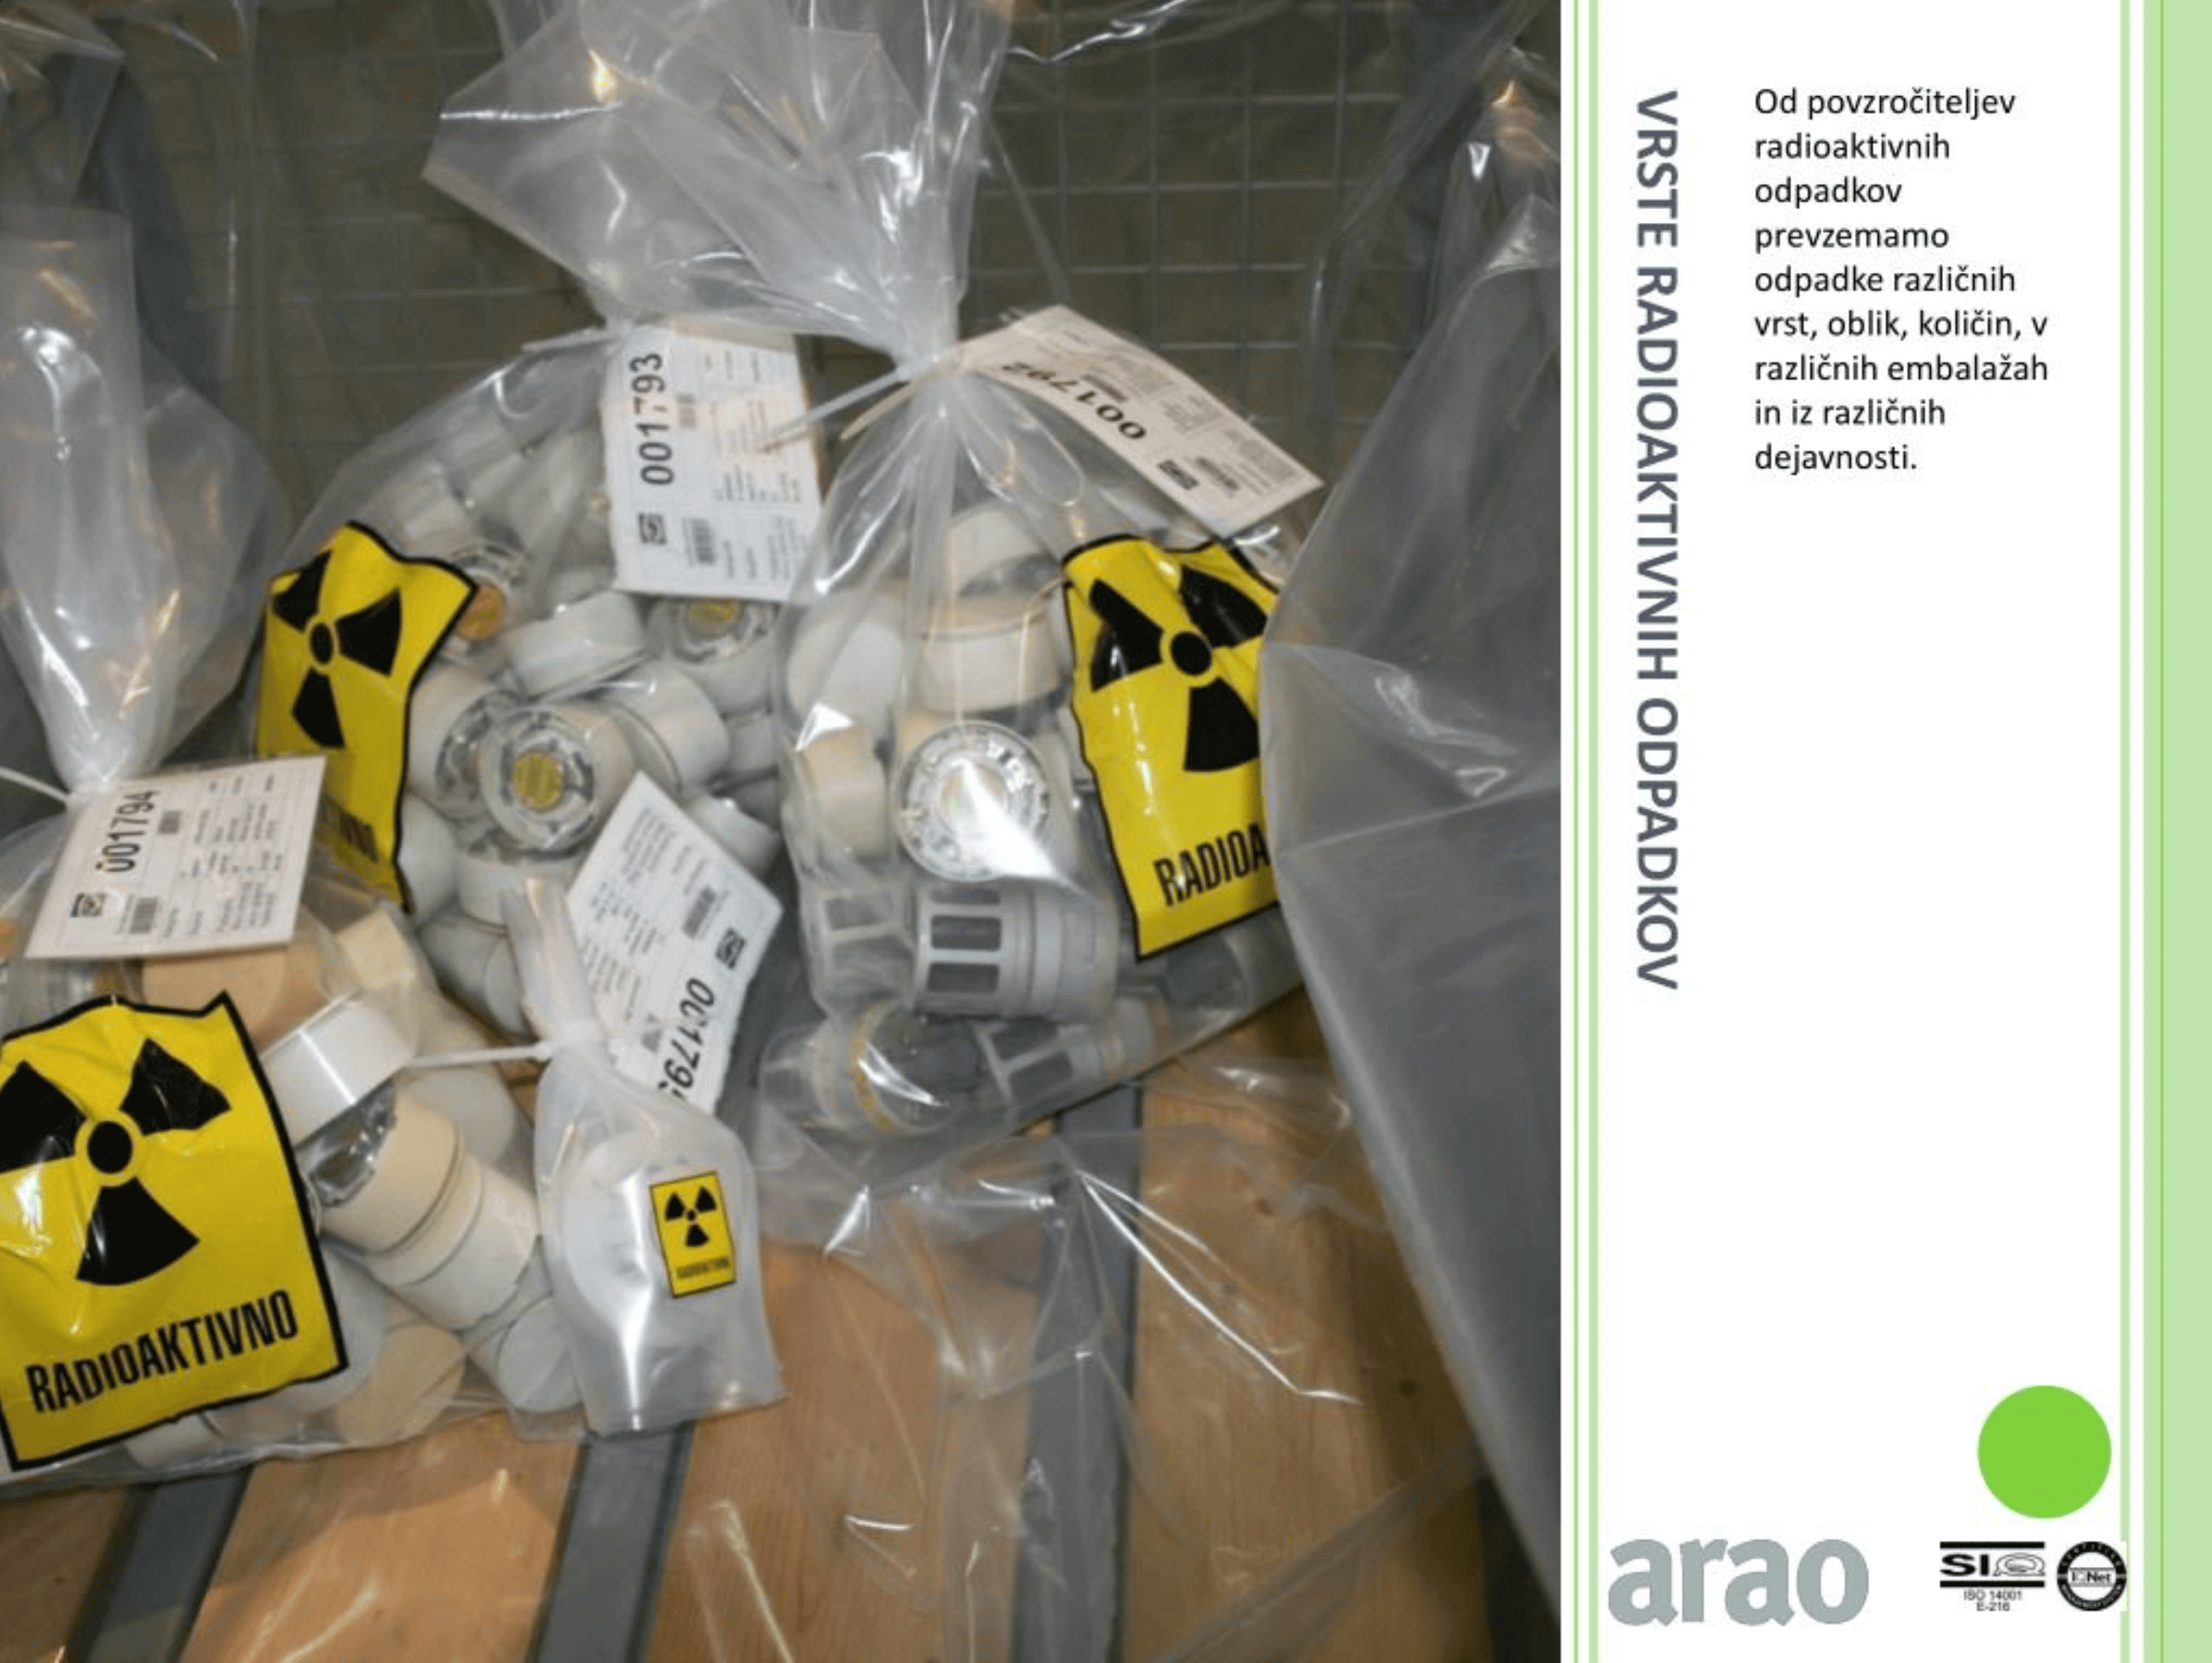 Arao entsorgt Rauchmelder in Slowenien